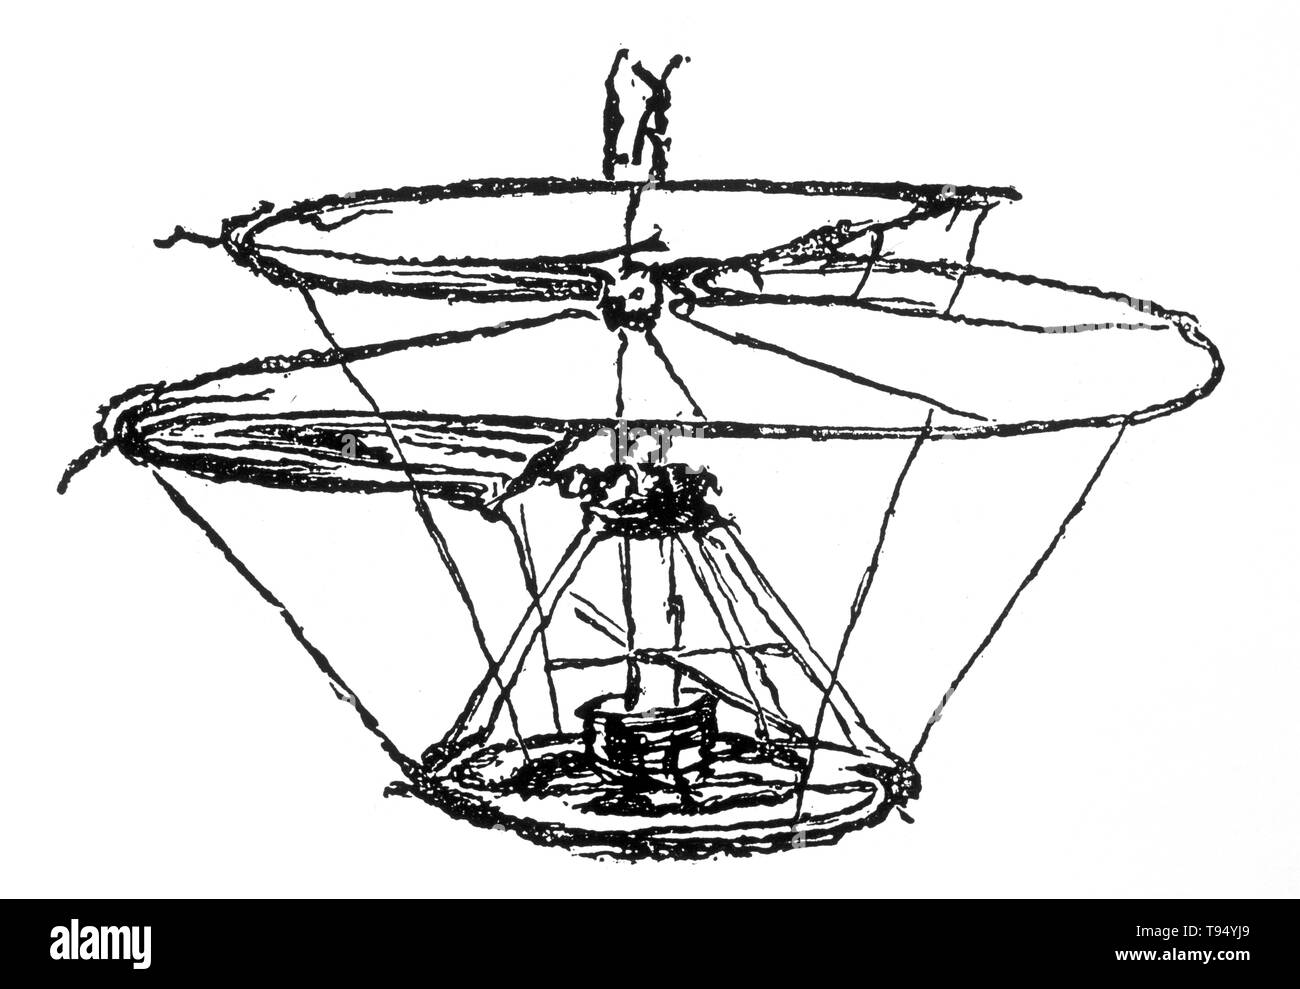 Un disegno di Leonardo da Vinci di una macchina volante noto come 'aria elicoidale vite' o 'elica'. Esso è stato concepito per comprimere aria per ottenere il volo, simile ai moderni elicotteri. Foto Stock